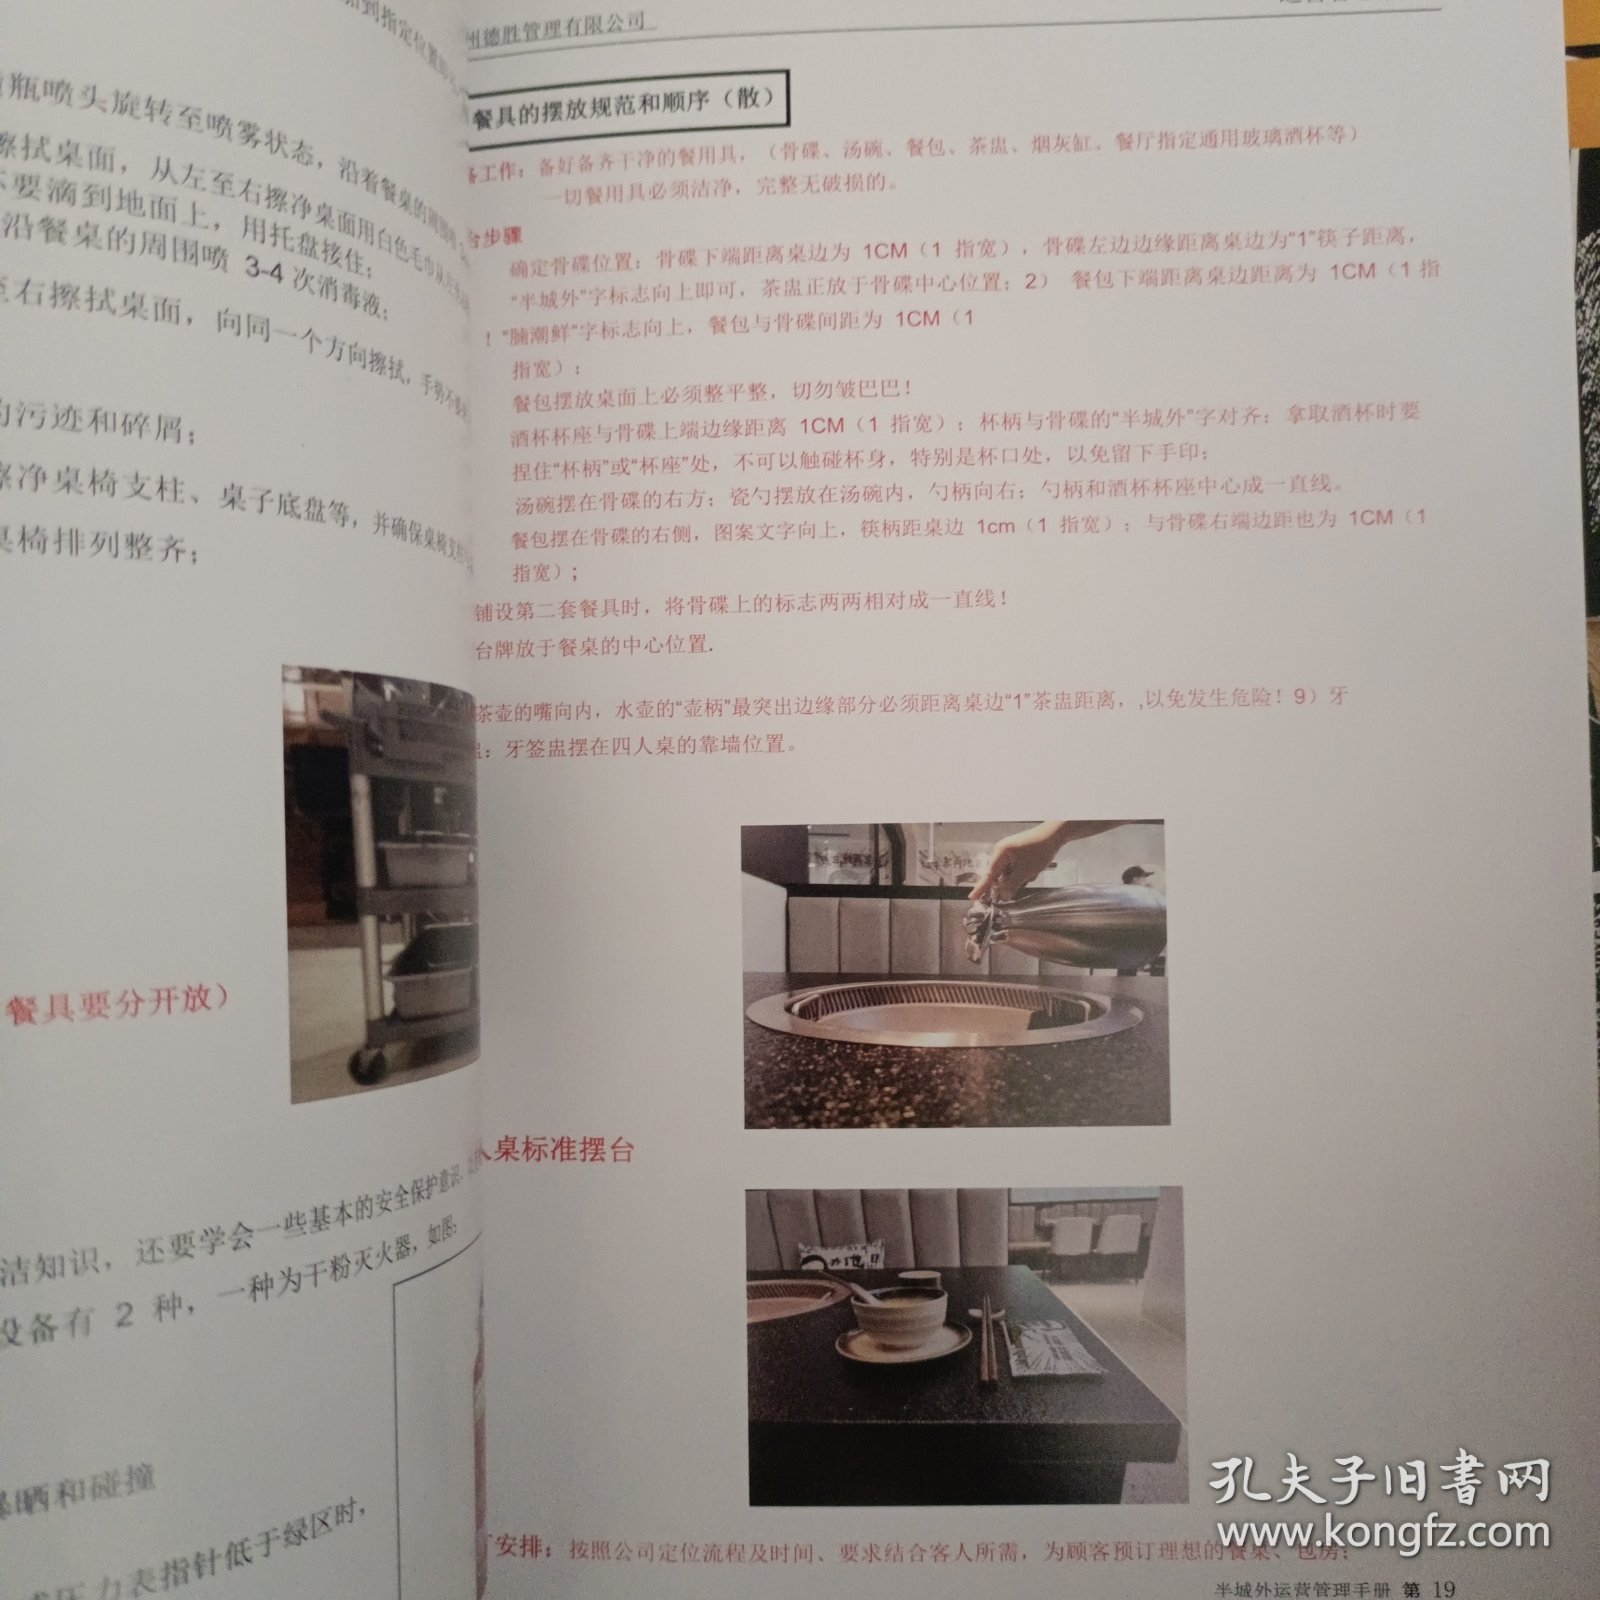 半城外牛杂锅语 运营管理手册 、品牌视觉形象应用手册、出品标准操作手册 3册合售